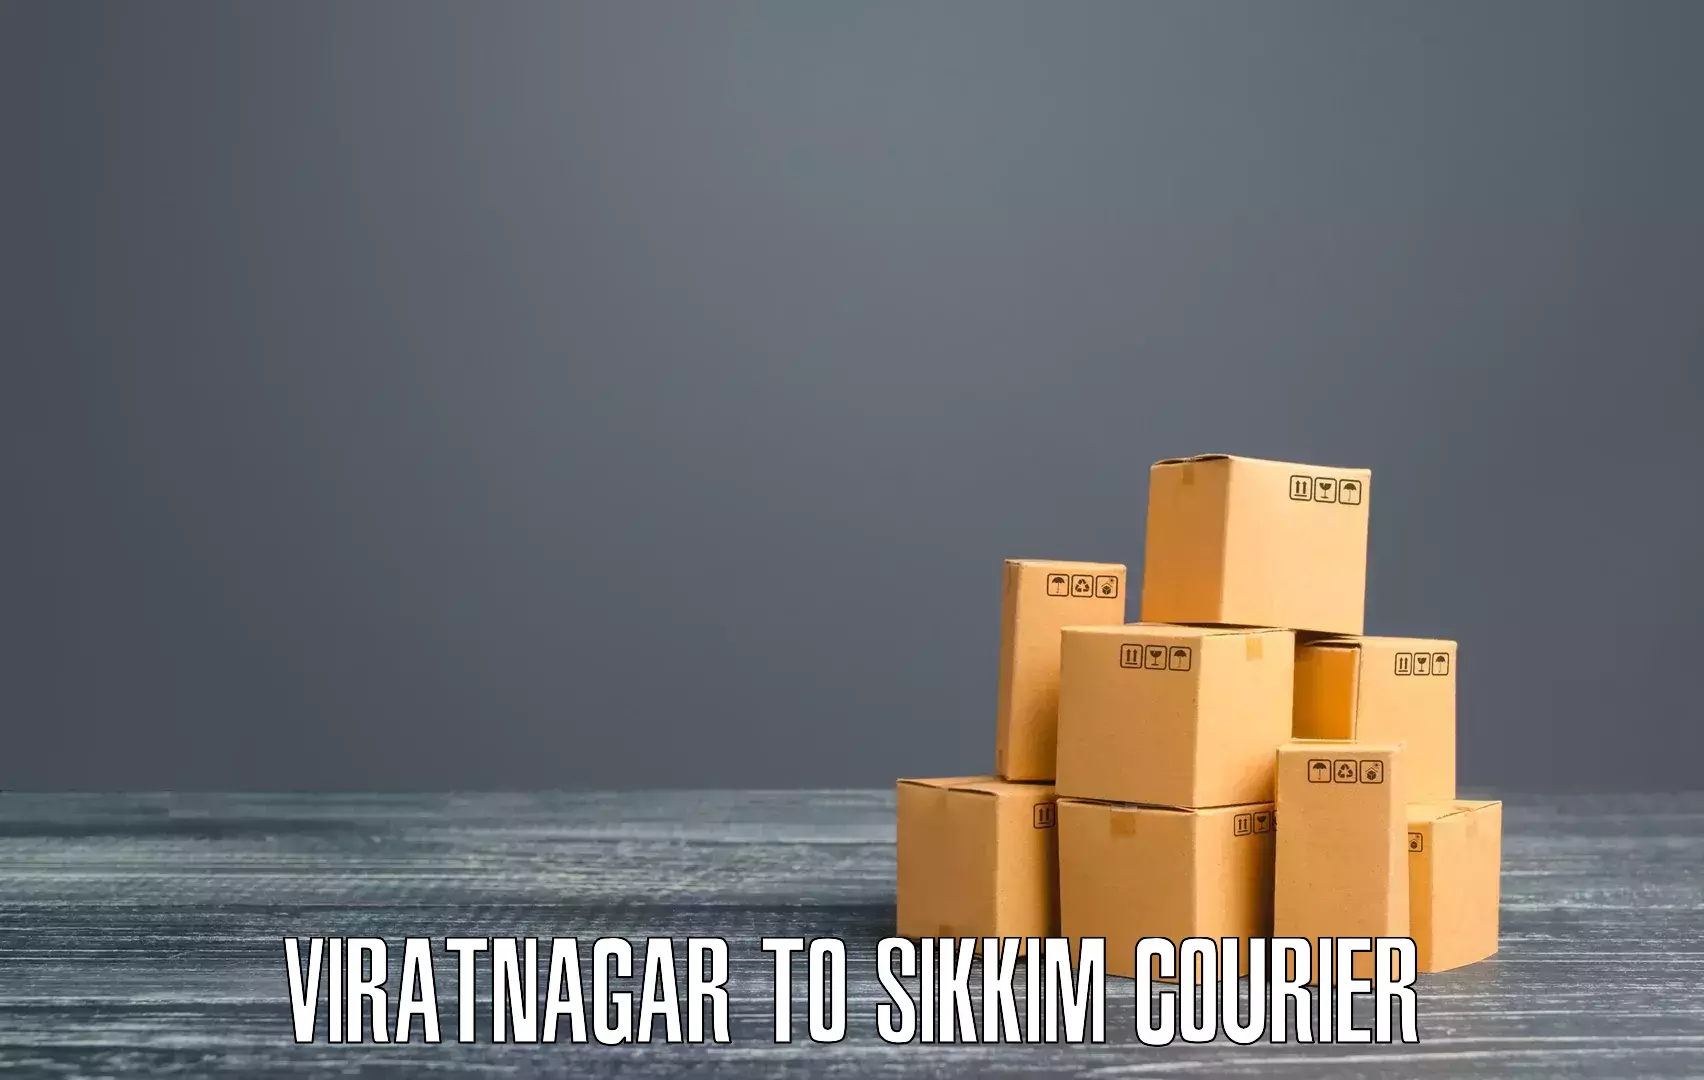 Expedited shipping solutions Viratnagar to Rongli